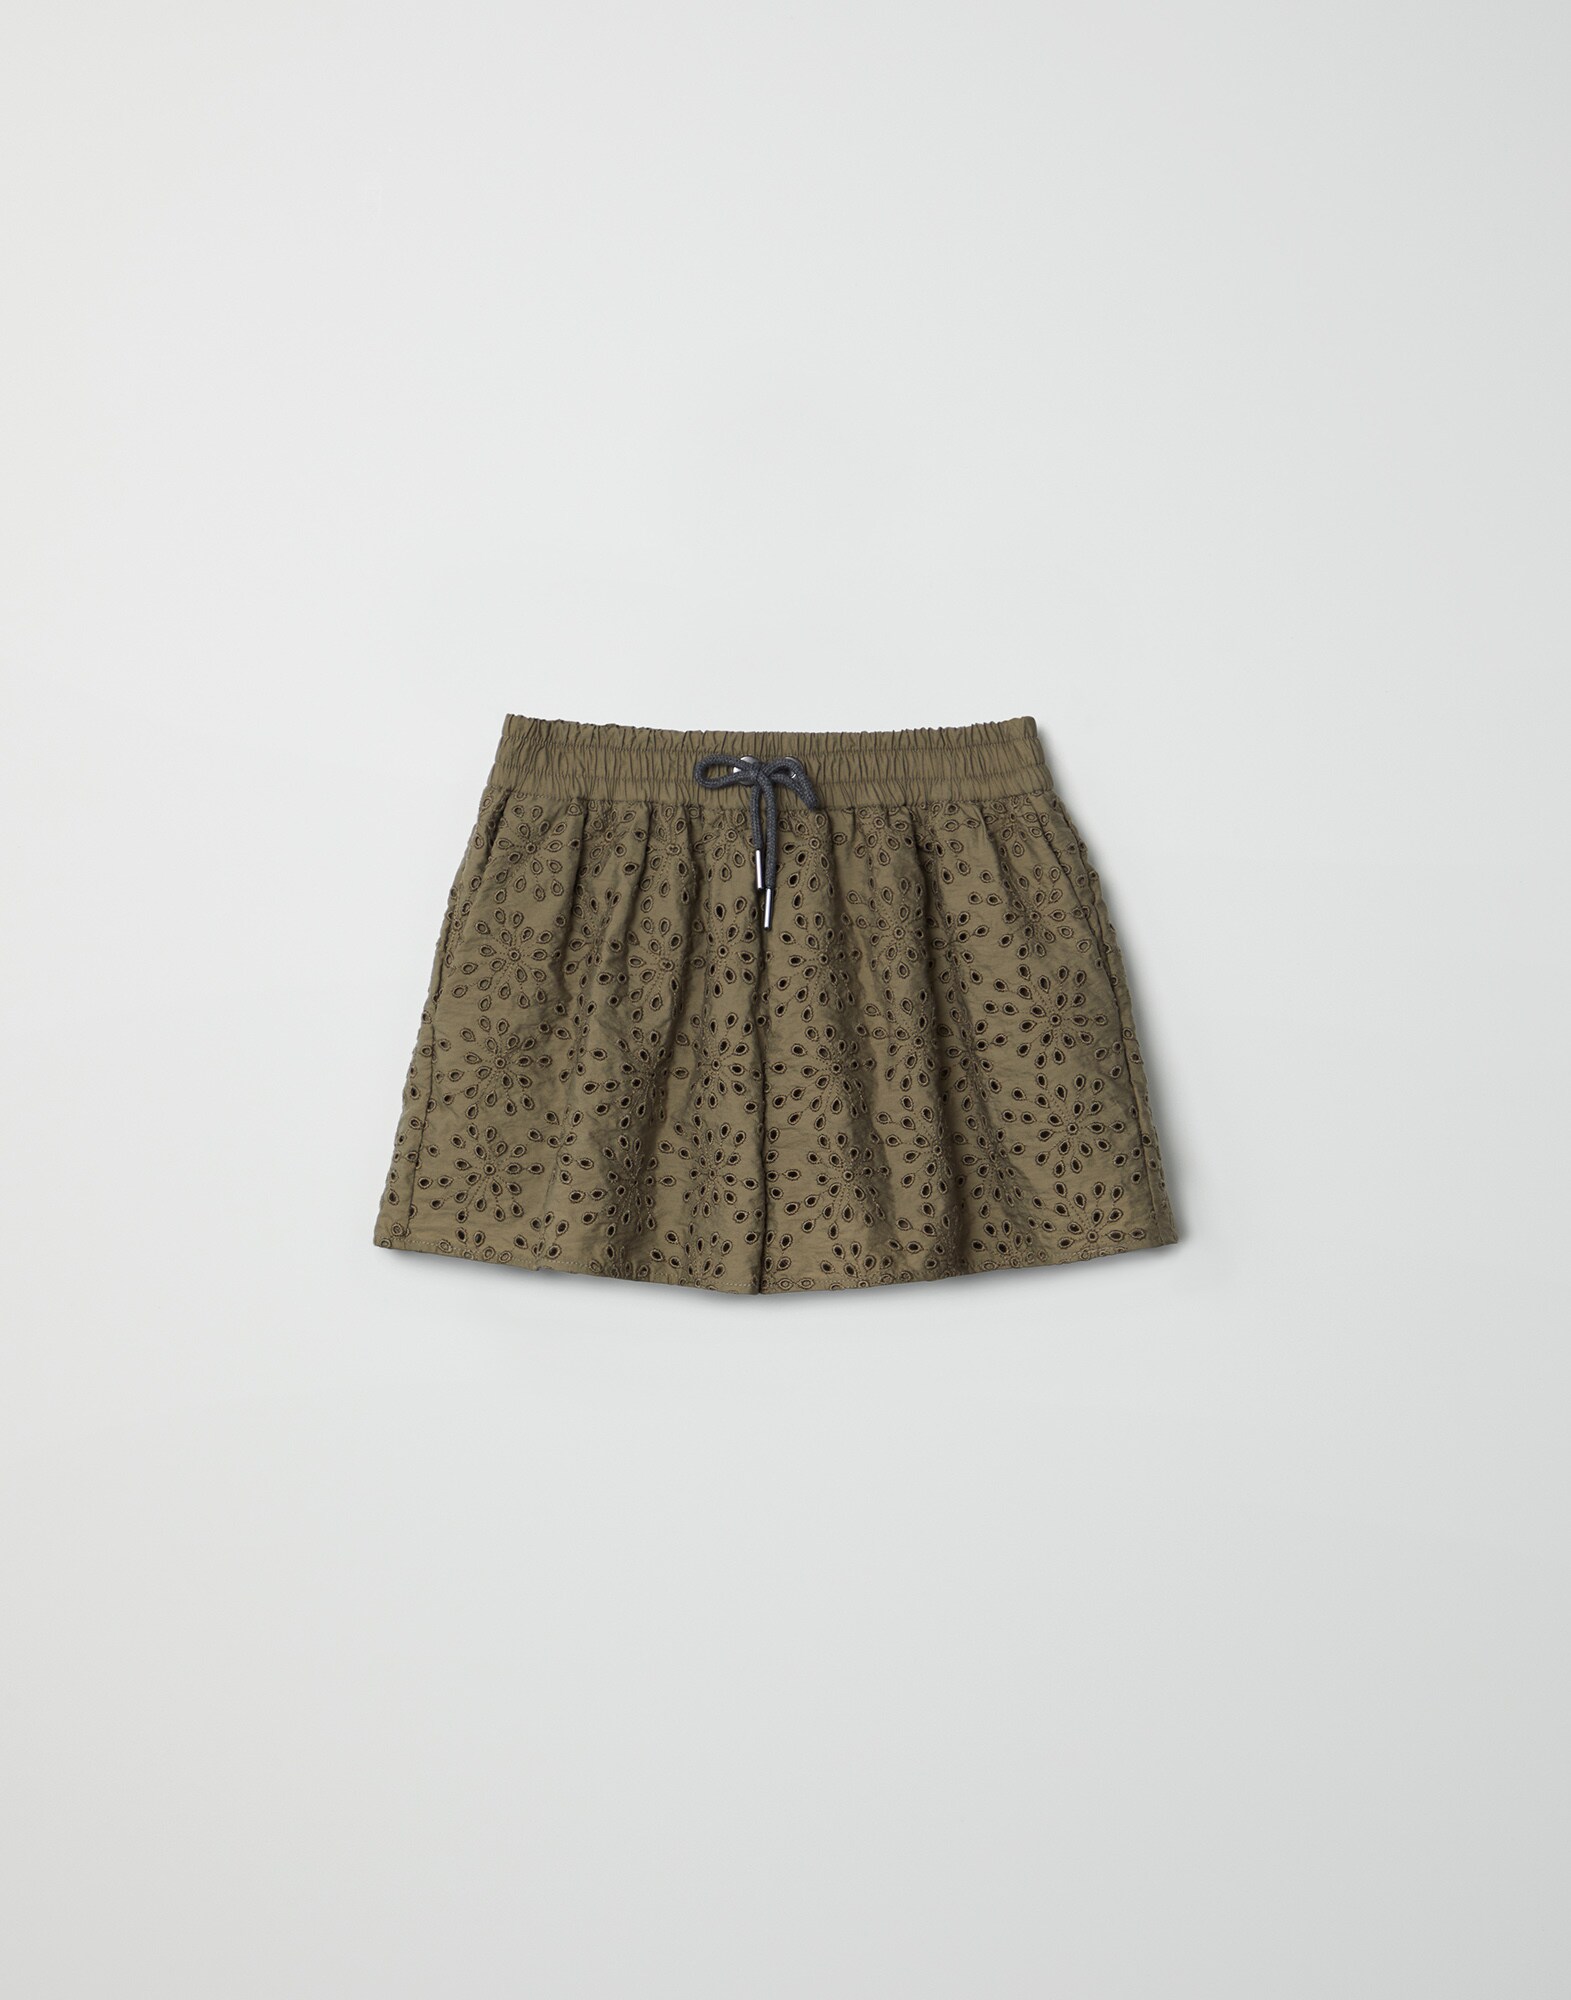 Shorts aus Popeline